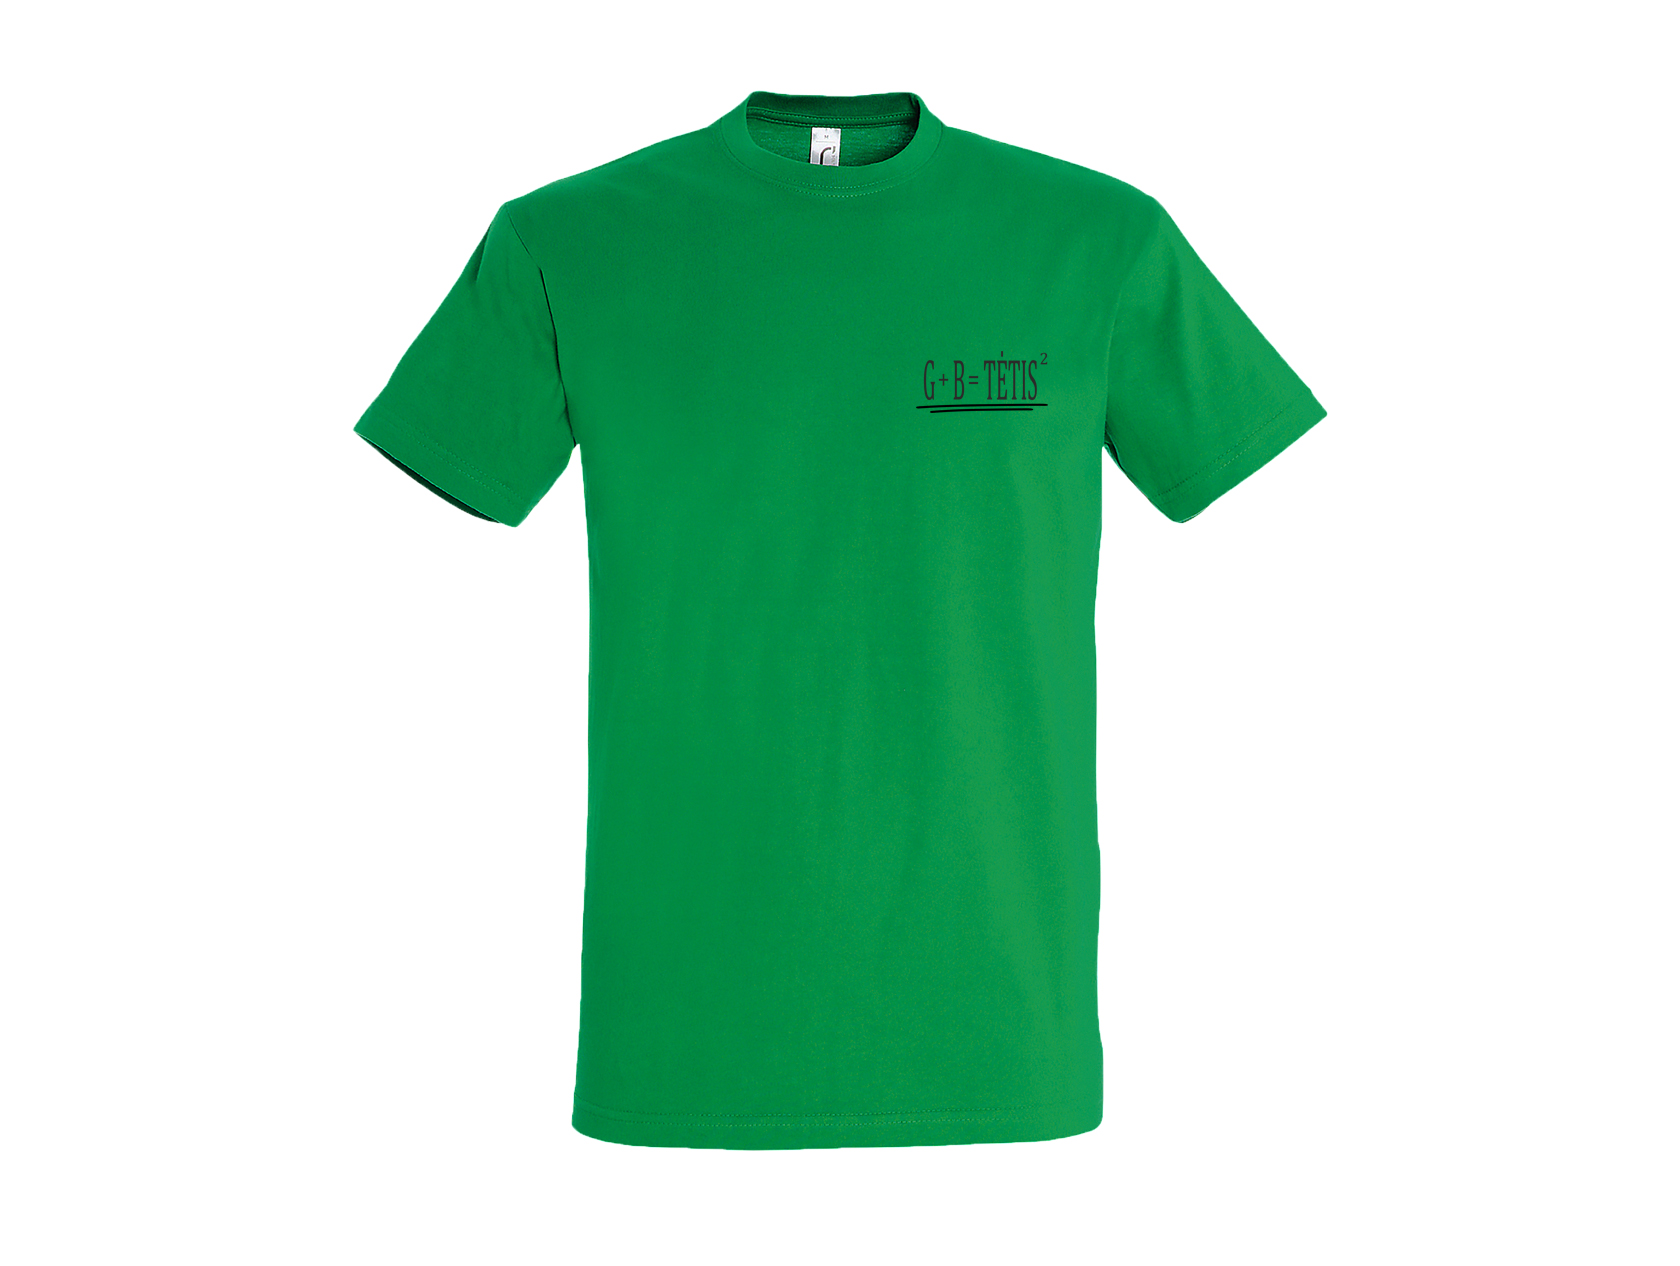 Žali minimalistiniai marškinėliai Tėtis kvadratu